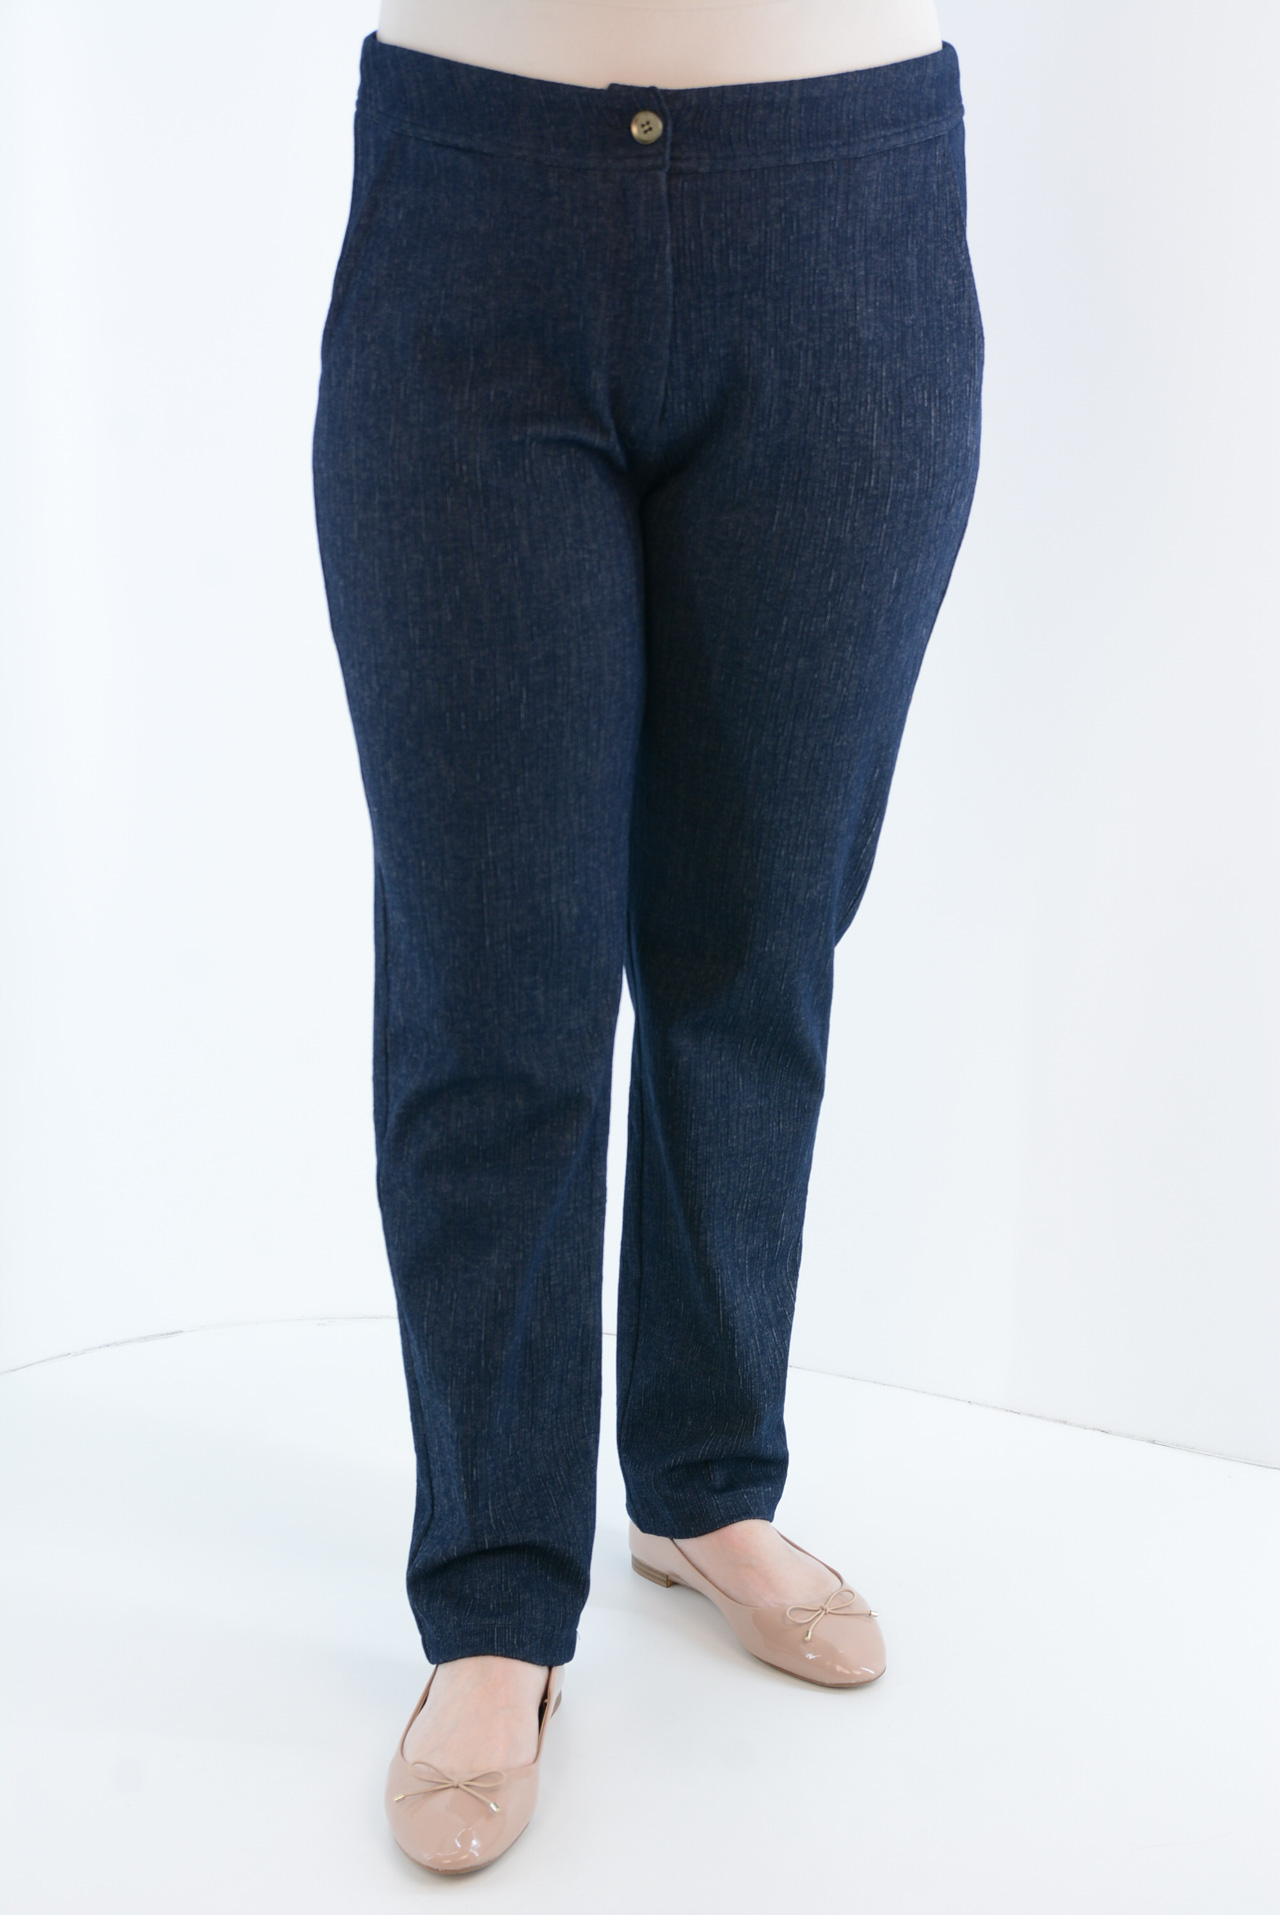 Παντελόνι γυναικείο τύπου τζιν κωδ. MAR019231 μπροστινή όψη